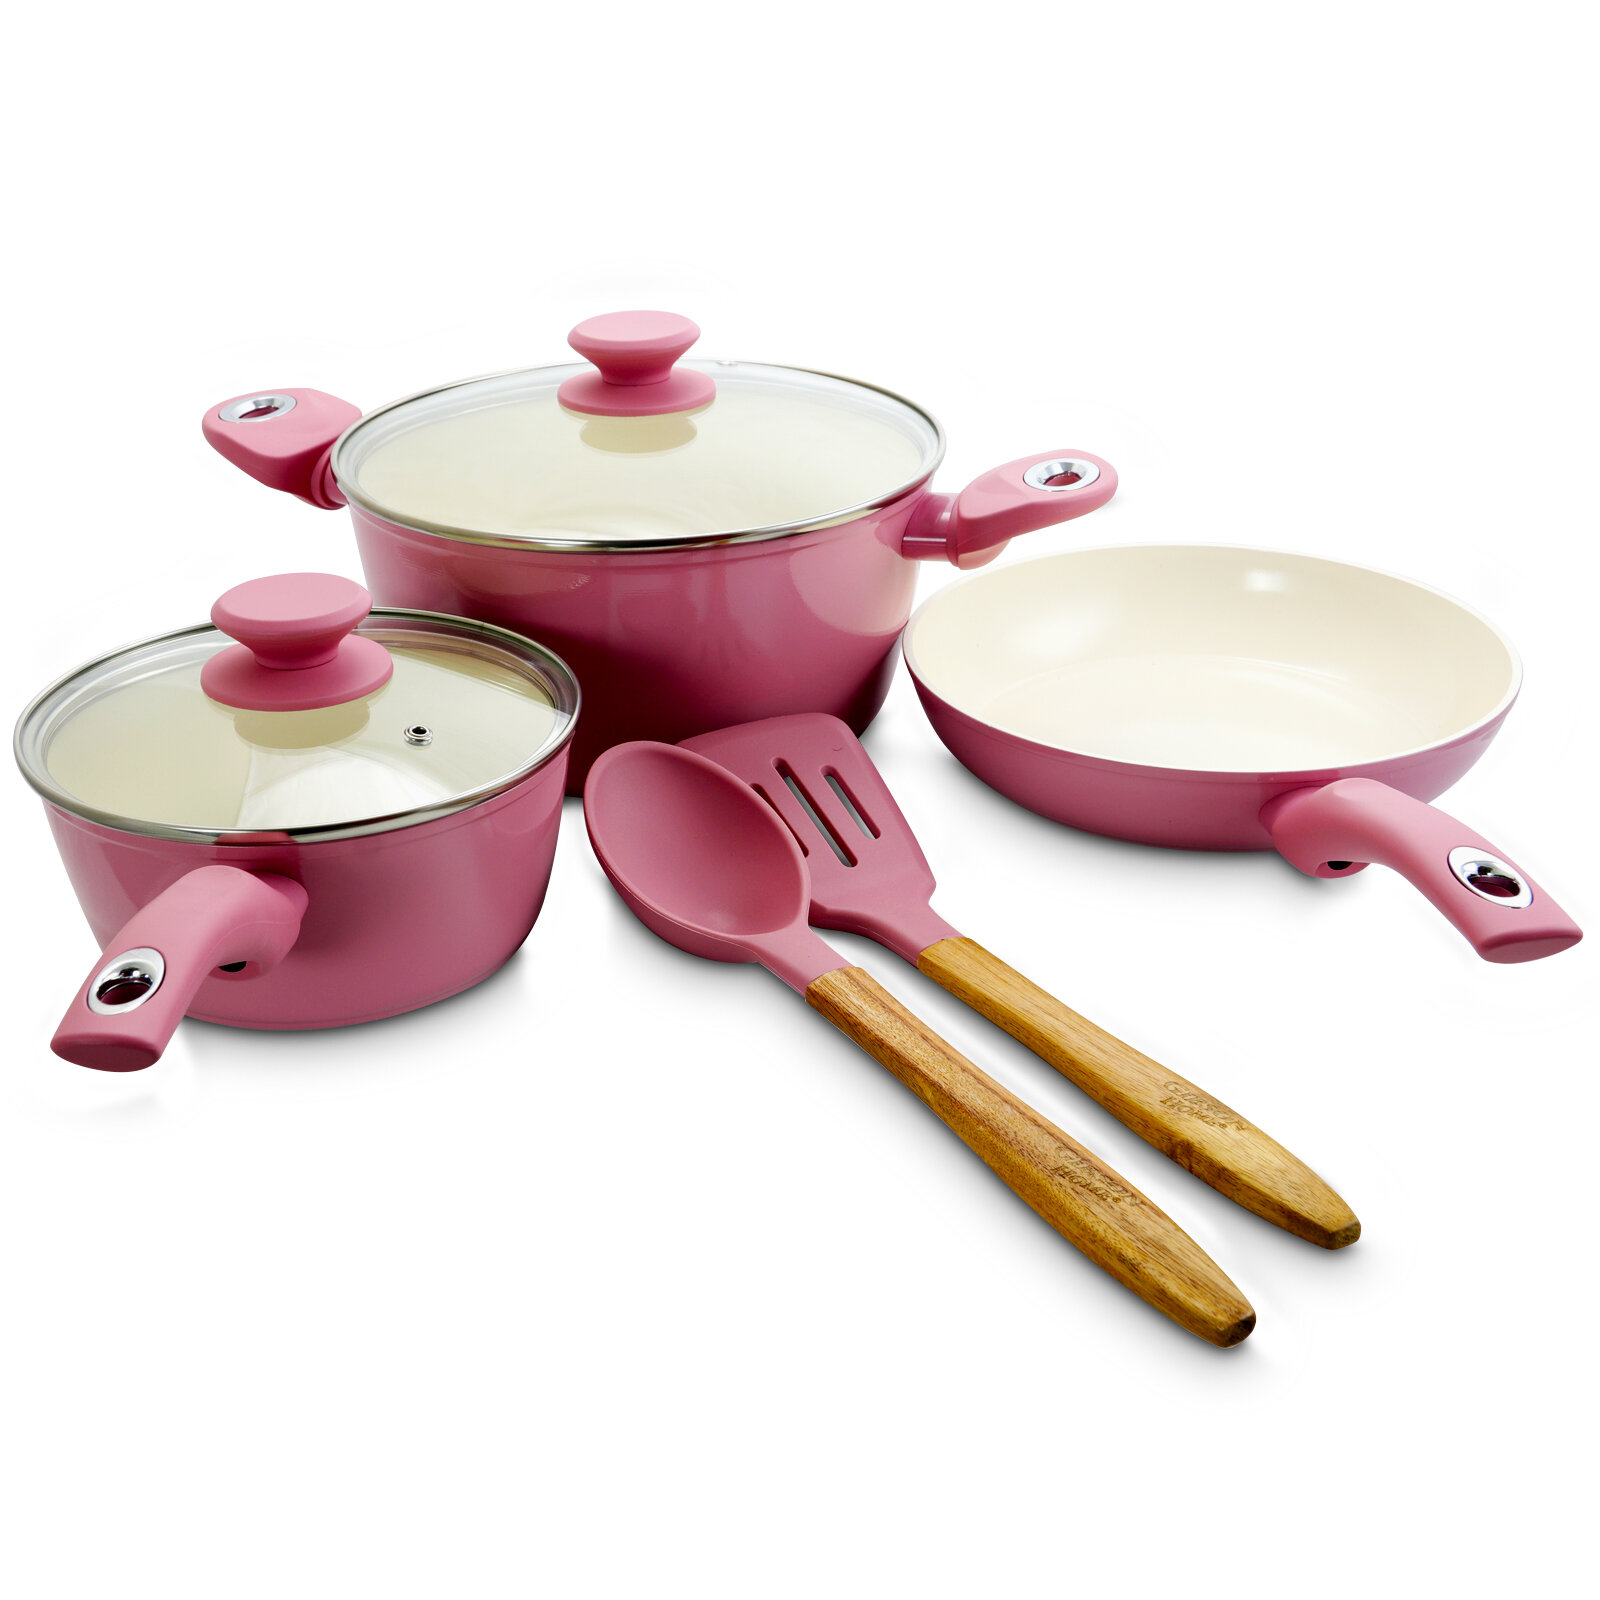 https://assets.wfcdn.com/im/65921410/compr-r85/7354/73547495/edward-7-piece-non-stick-enameled-cast-iron-cookware-set.jpg